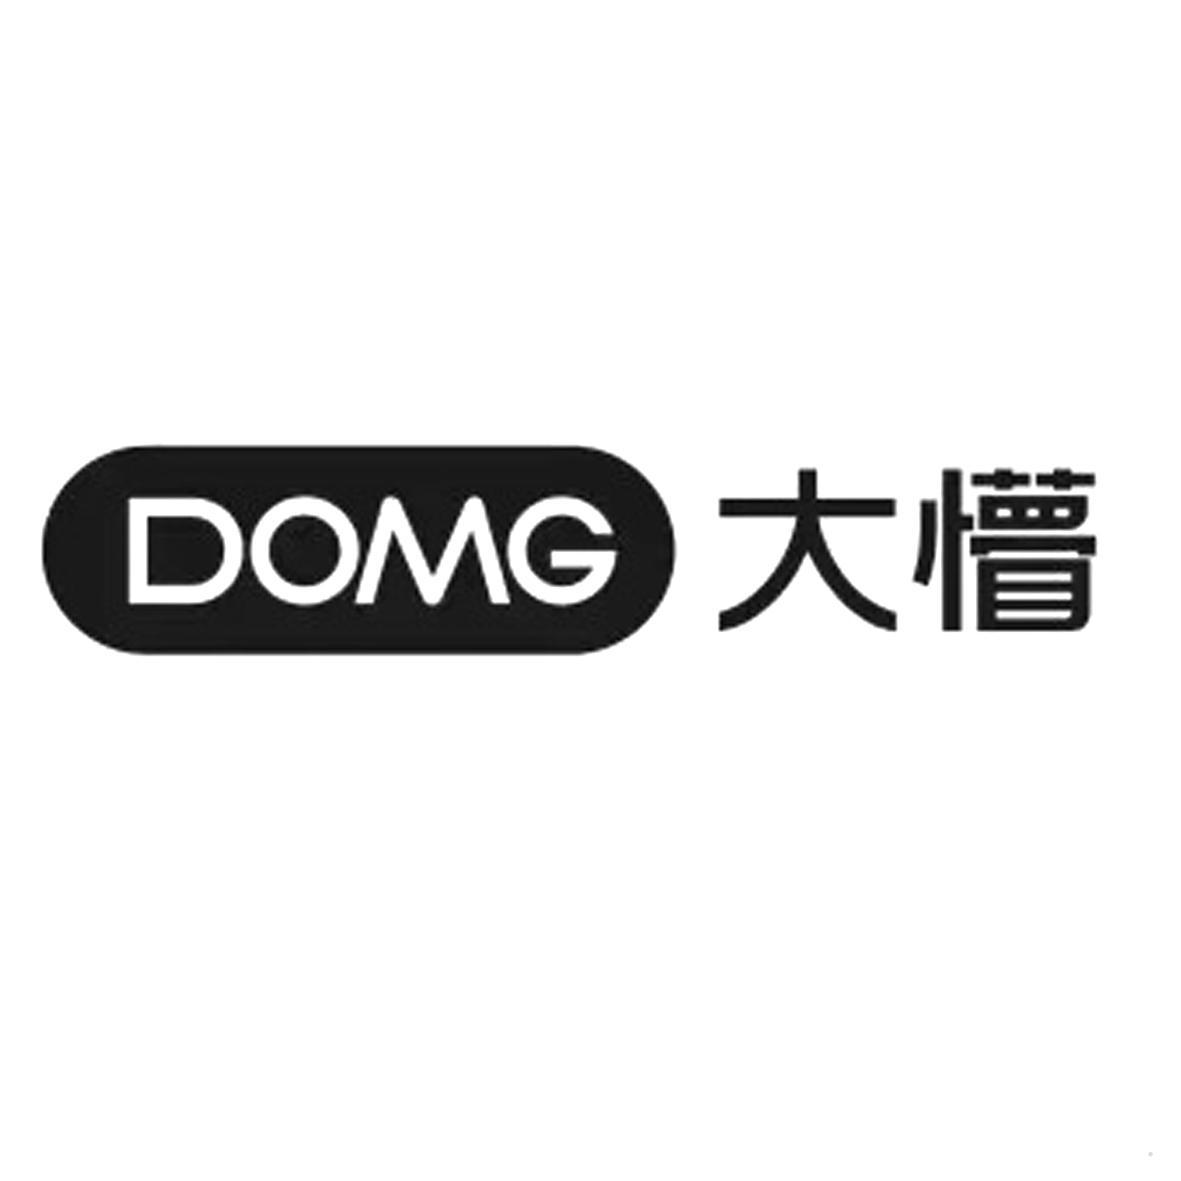 DOMG 大懵logo